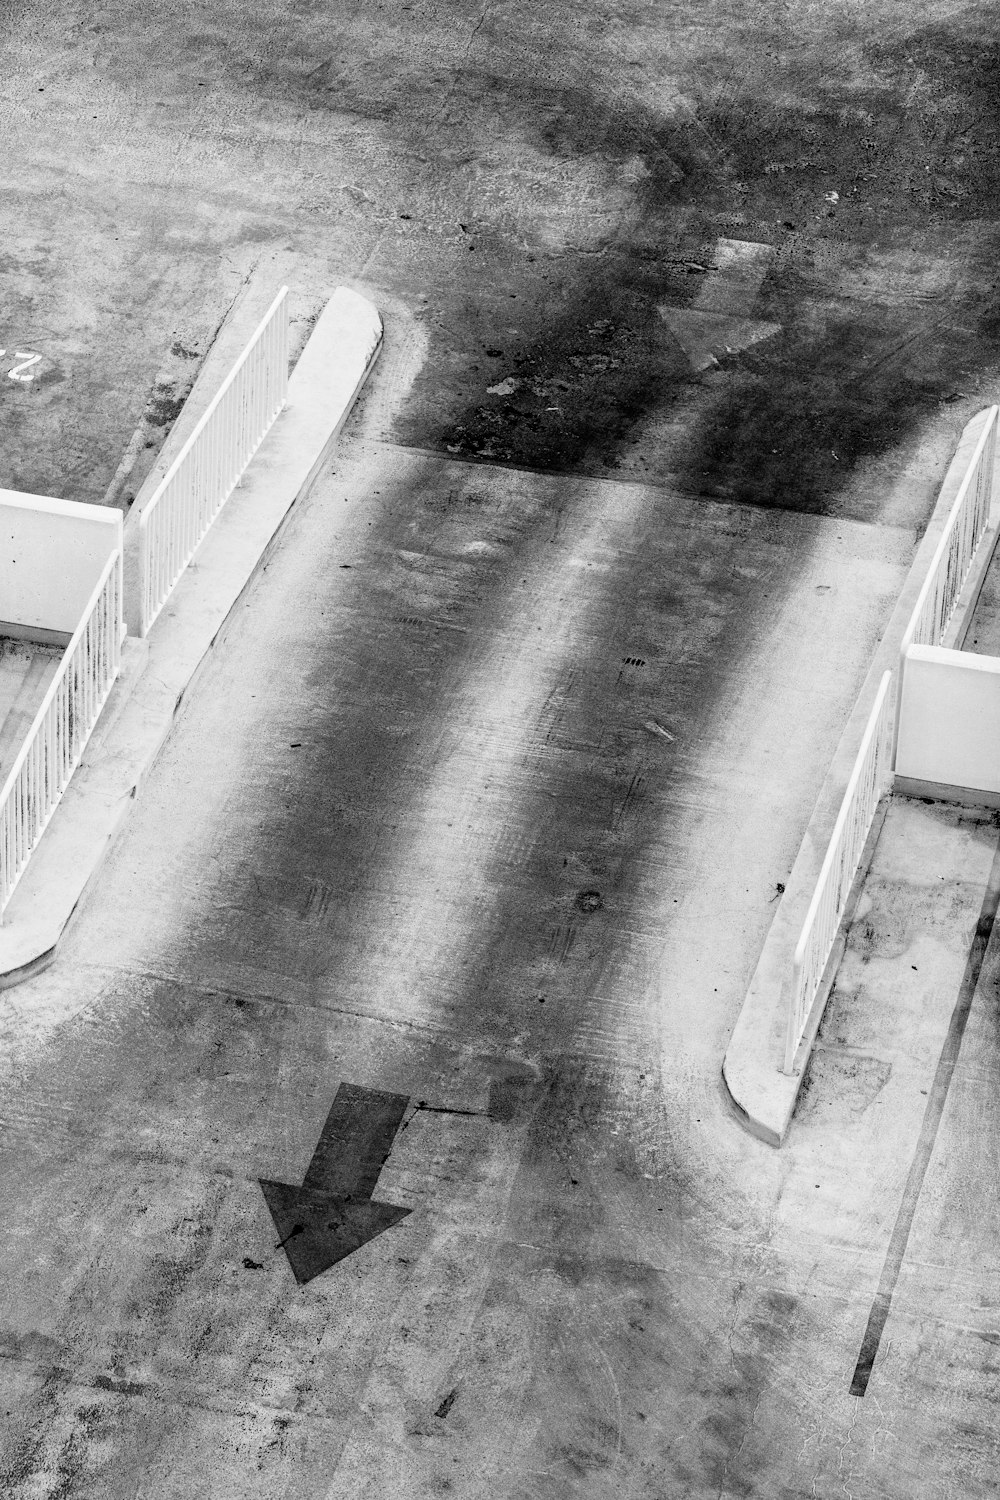 fotografia in scala di grigi dell'asta di cemento con le frecce